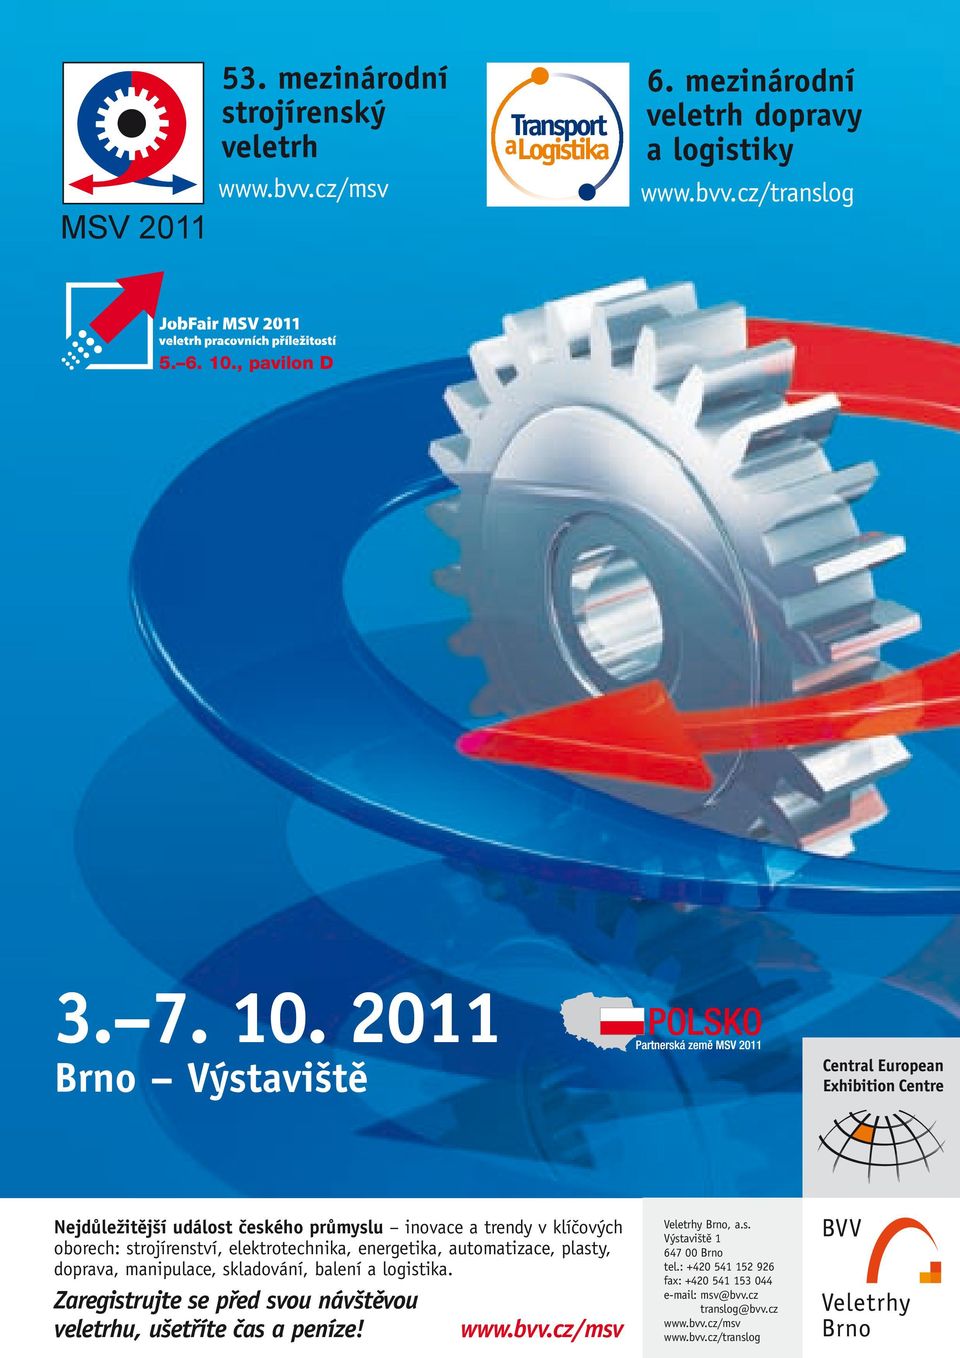 2011 Brno Výstaviště Nejdůležitější událost českého průmyslu inovace a trendy v klíčových oborech: strojírenství, elektrotechnika, energetika,